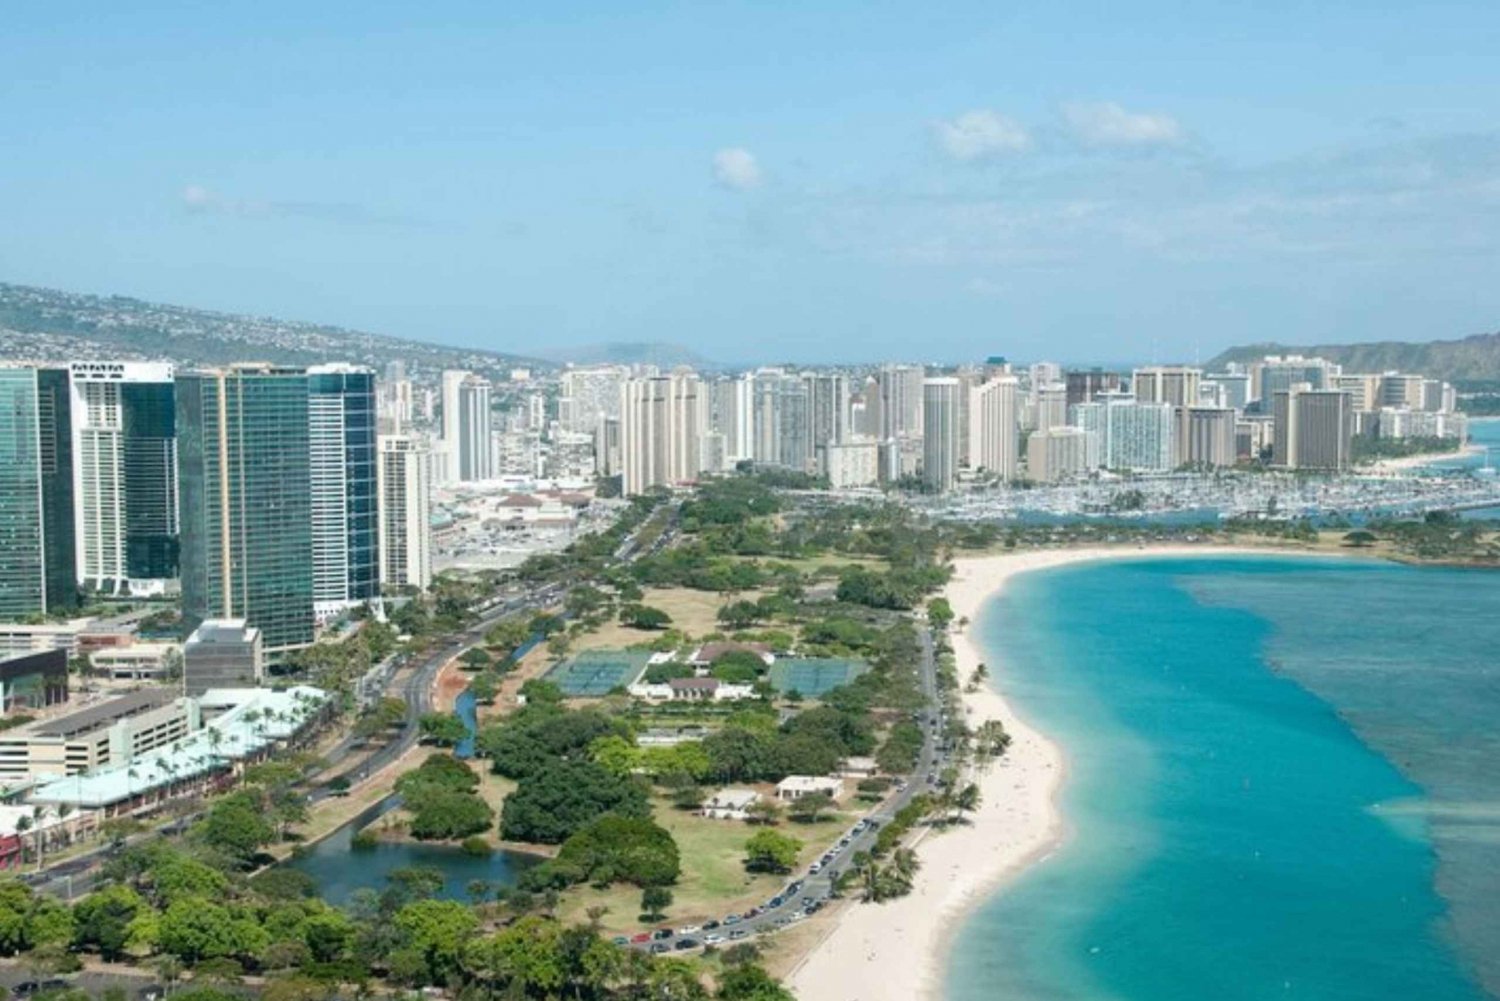 Honolulu: Yksityinen kiertoajelu paikallisen oppaan johdolla